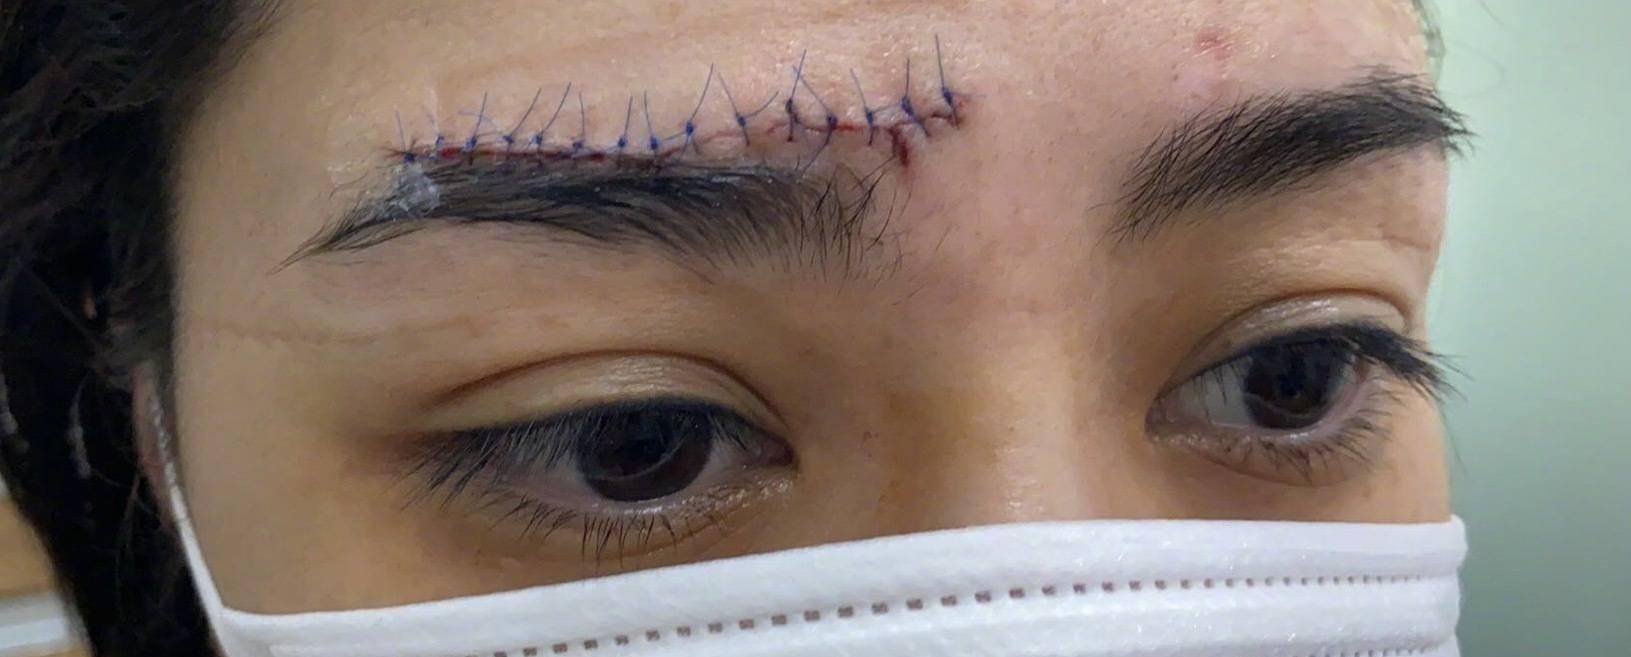 阿娇首晒伤口照!眉骨留下近5厘米蜈蚣疤,伤痕清晰可见